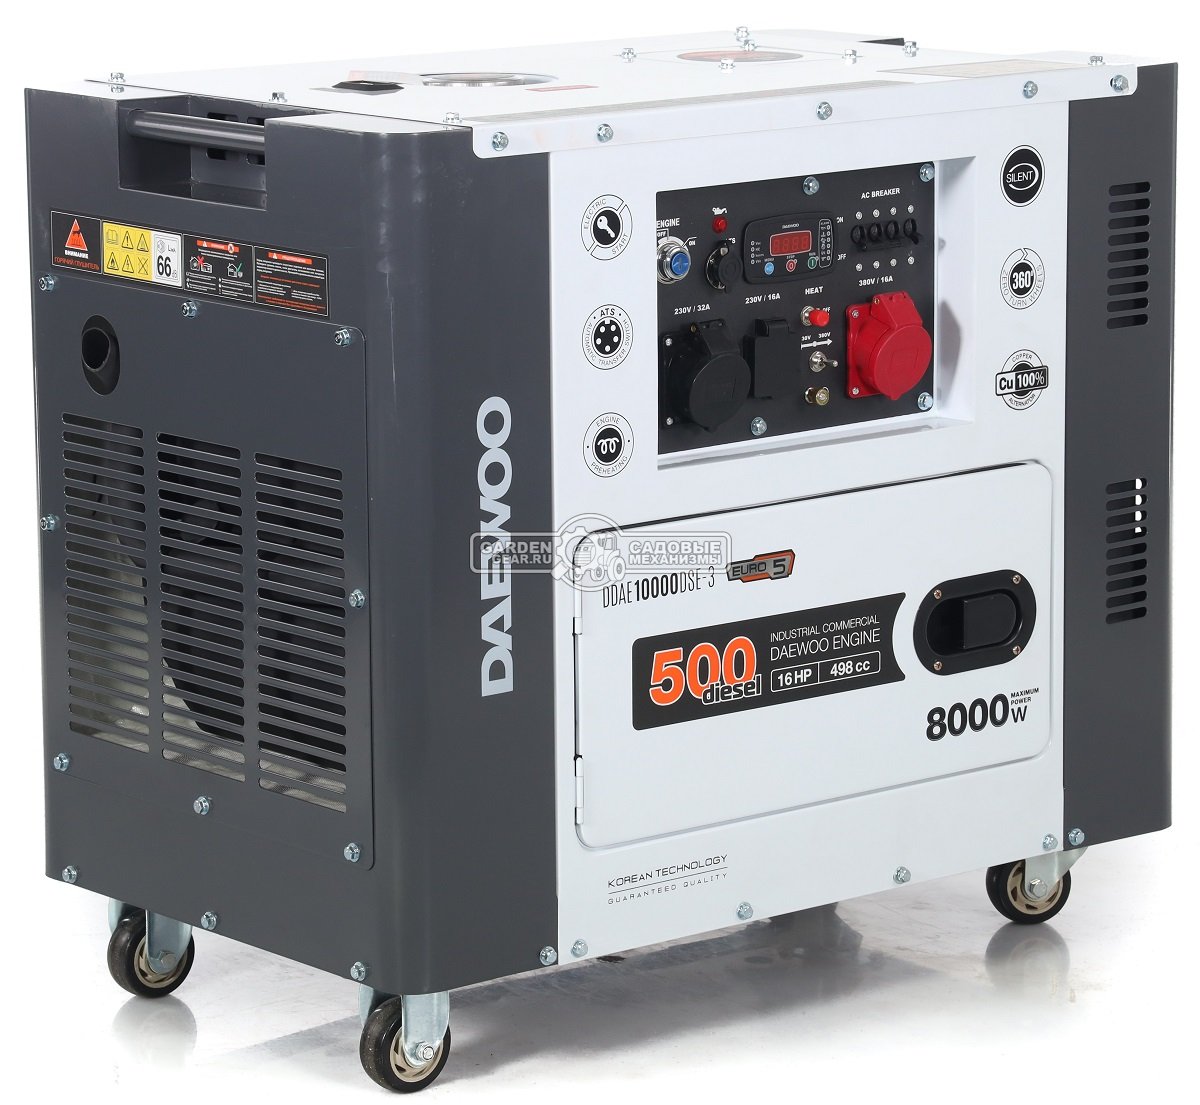 Дизельный генератор Daewoo DDAE 10000DSE-3 двухрежимный в шумозащитном кожухе (PRC, 498 см3, 16 л.с, 7,2/8,0 кВт, колеса, ATS, 15 л, 158,6 кг.)